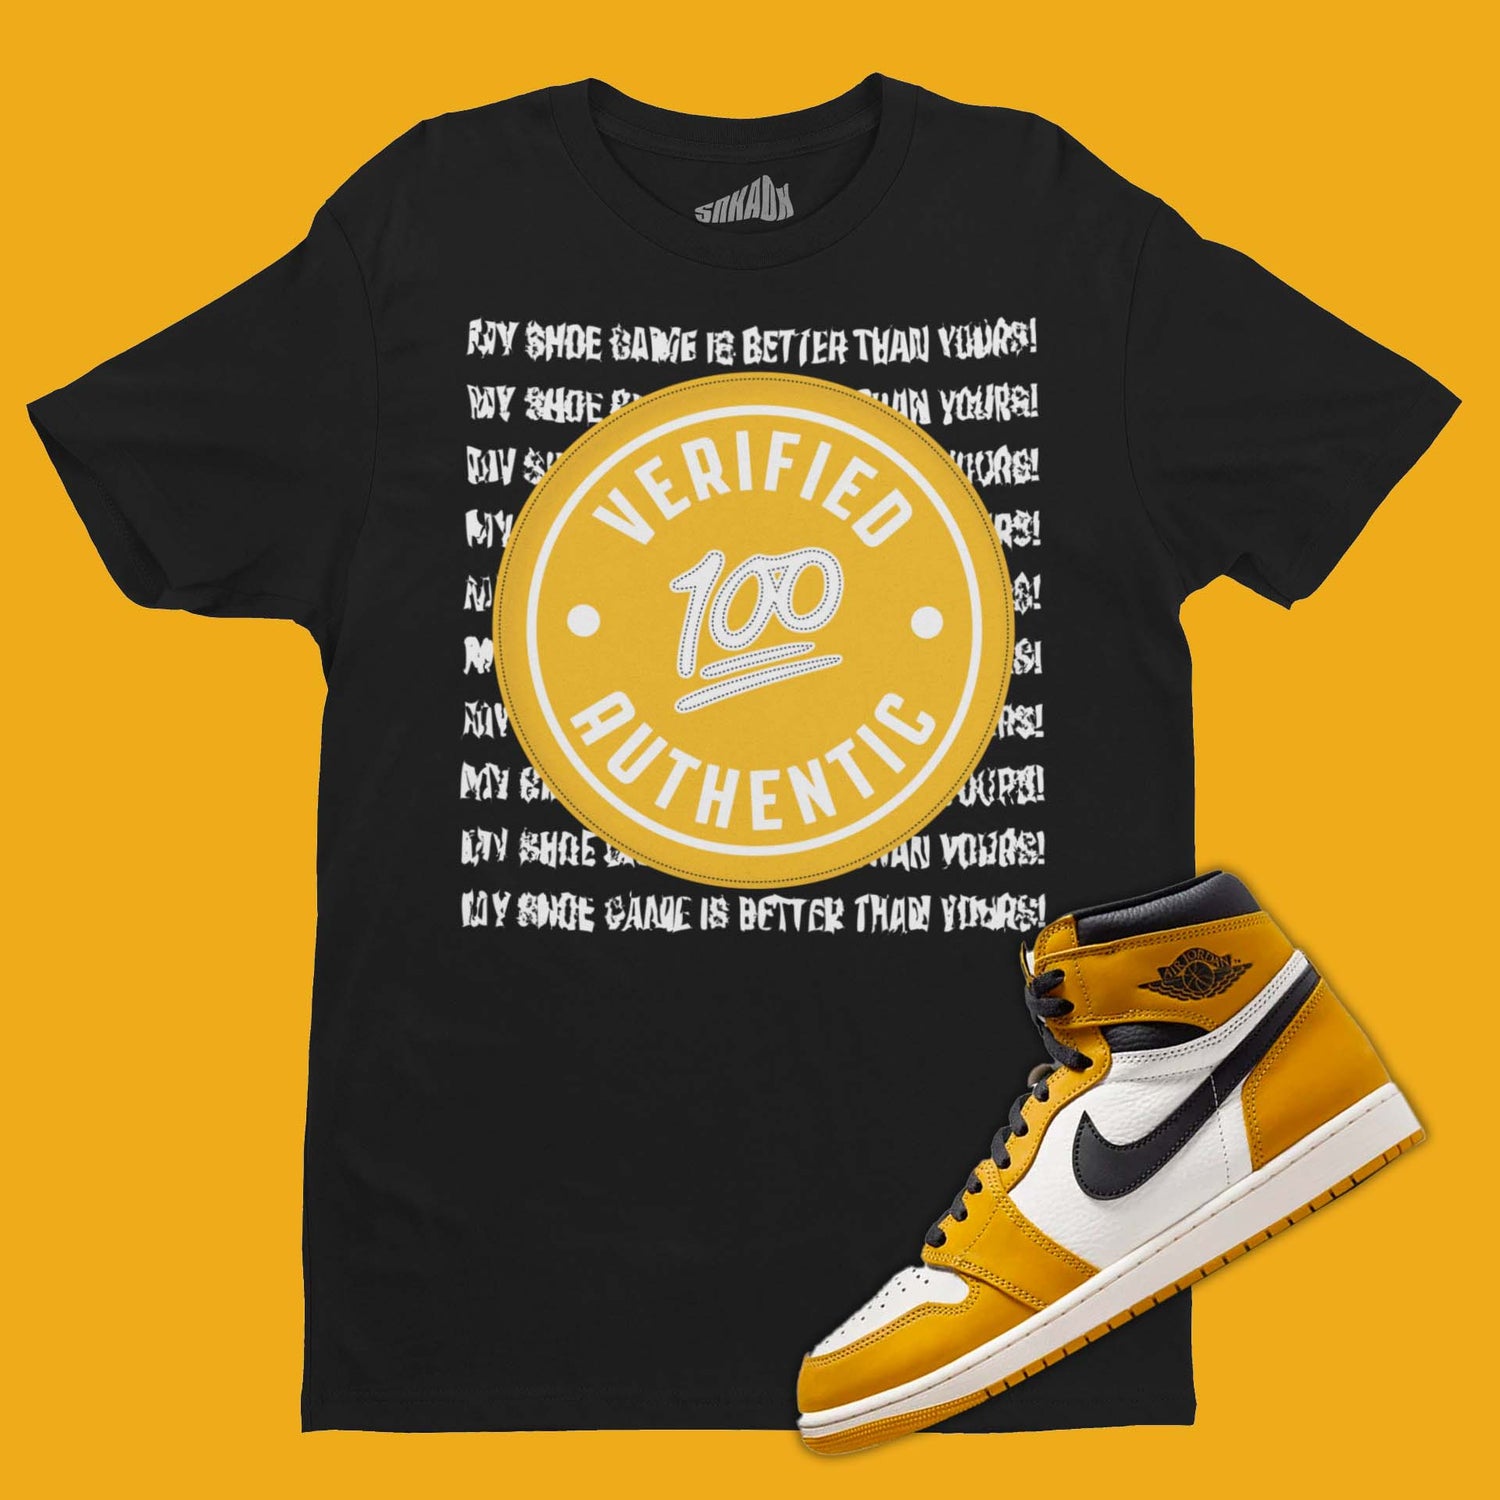 Verified Authentic T-Shirt Matching Air Jordan 1 High Yellow Ochre